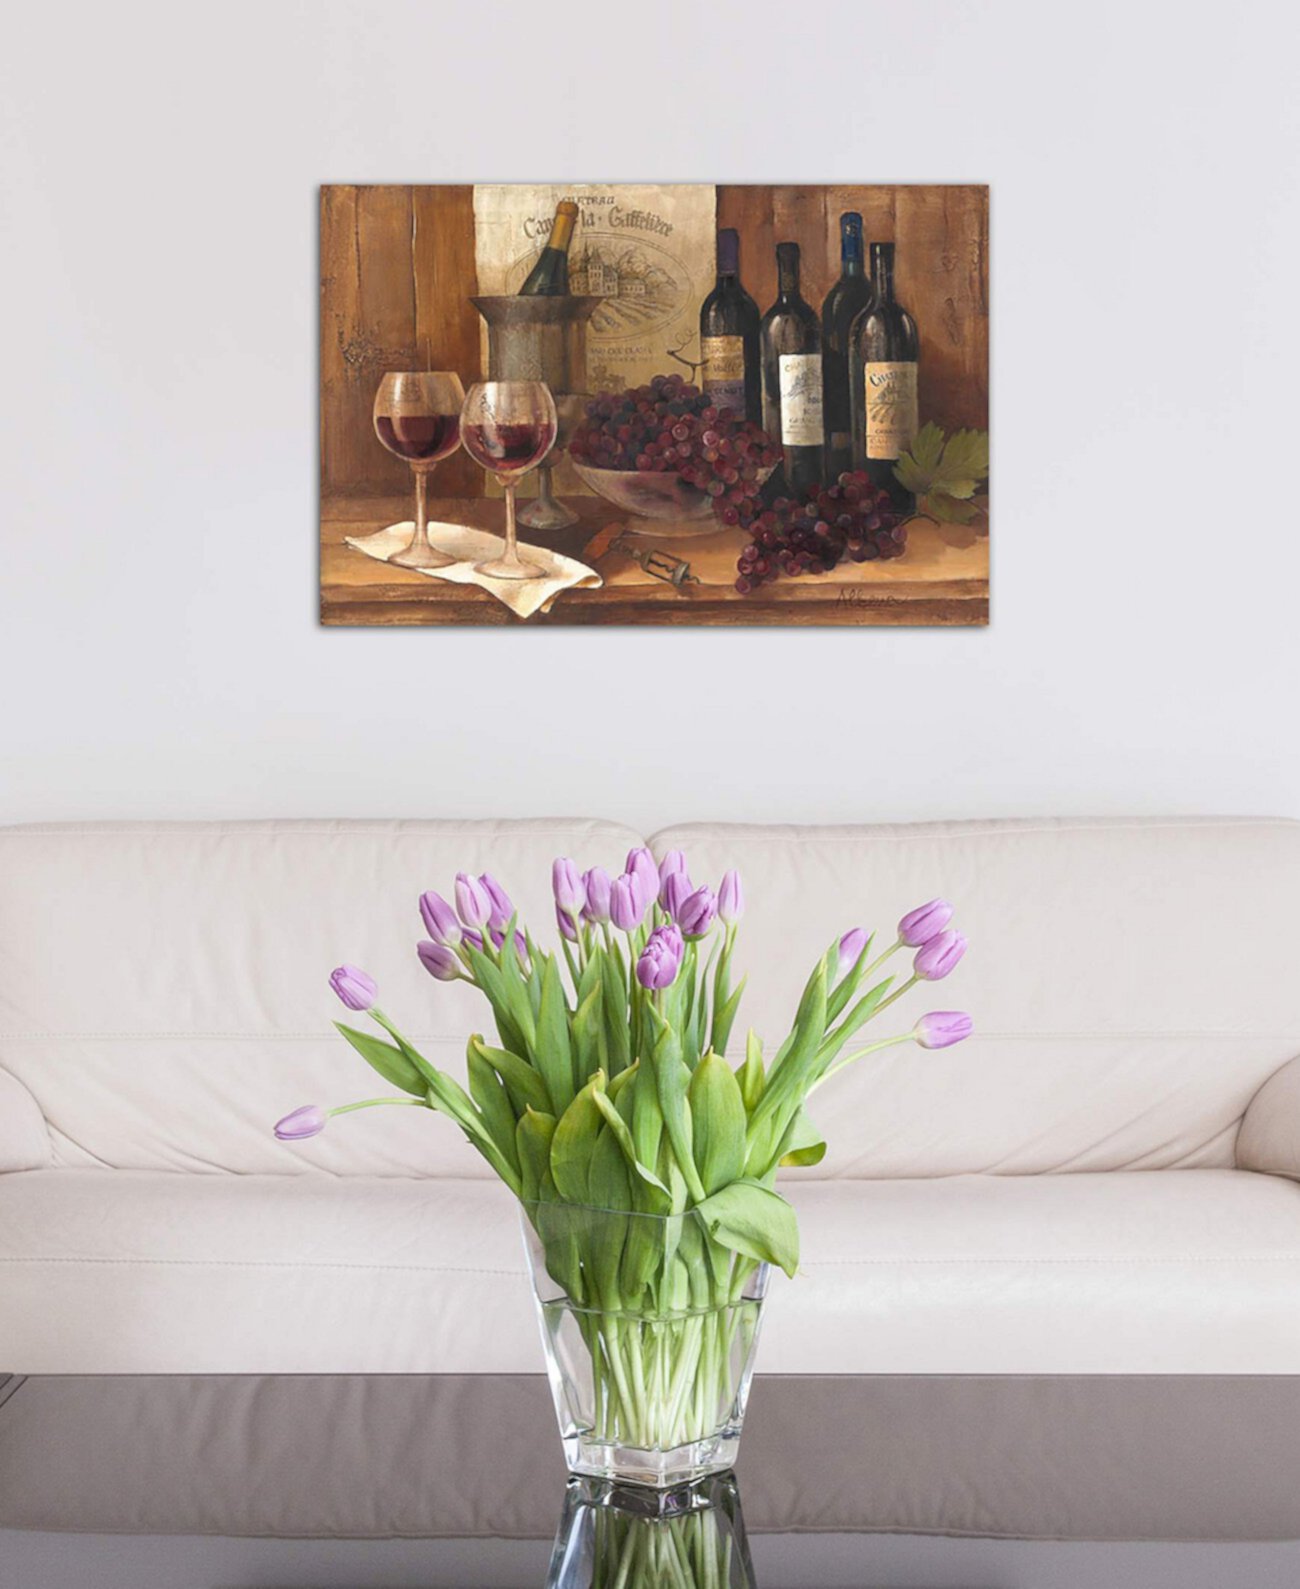 Картина Албены Христовой "Винтажное вино" на холсте в упаковке (26 x 40 x 0,75) ICanvas